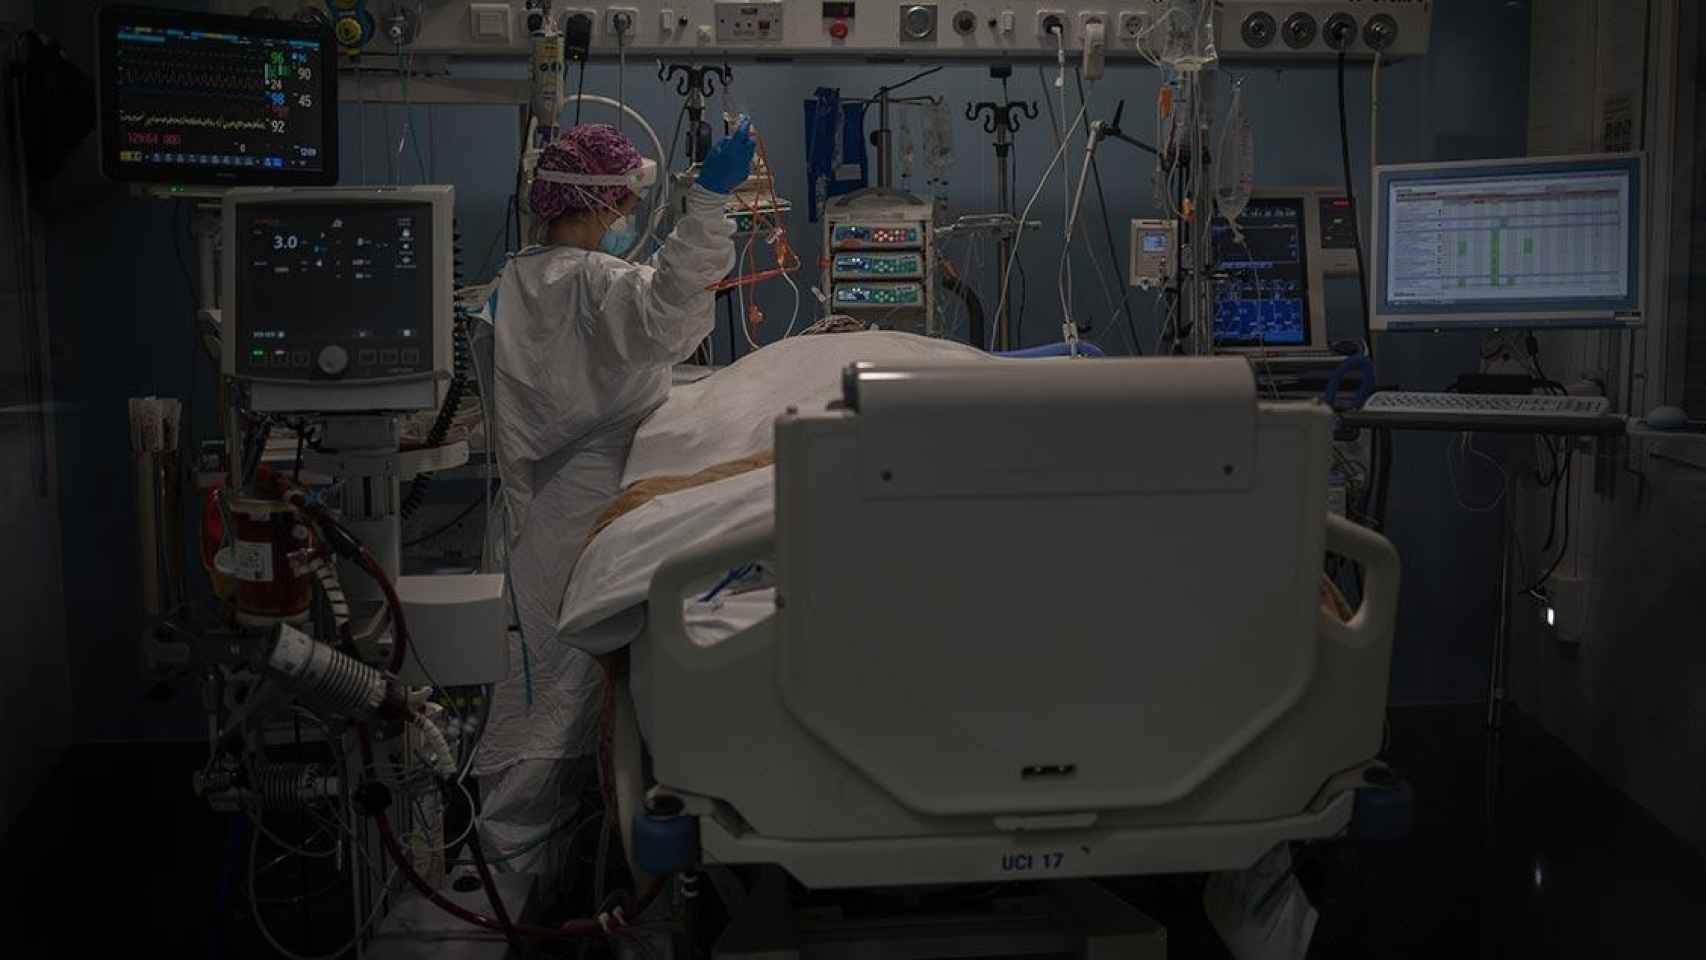 Una sanitaria atiende a un paciente ingresado por Covid en la uci de un hospital de Cataluña / David Zorrakino (EP)